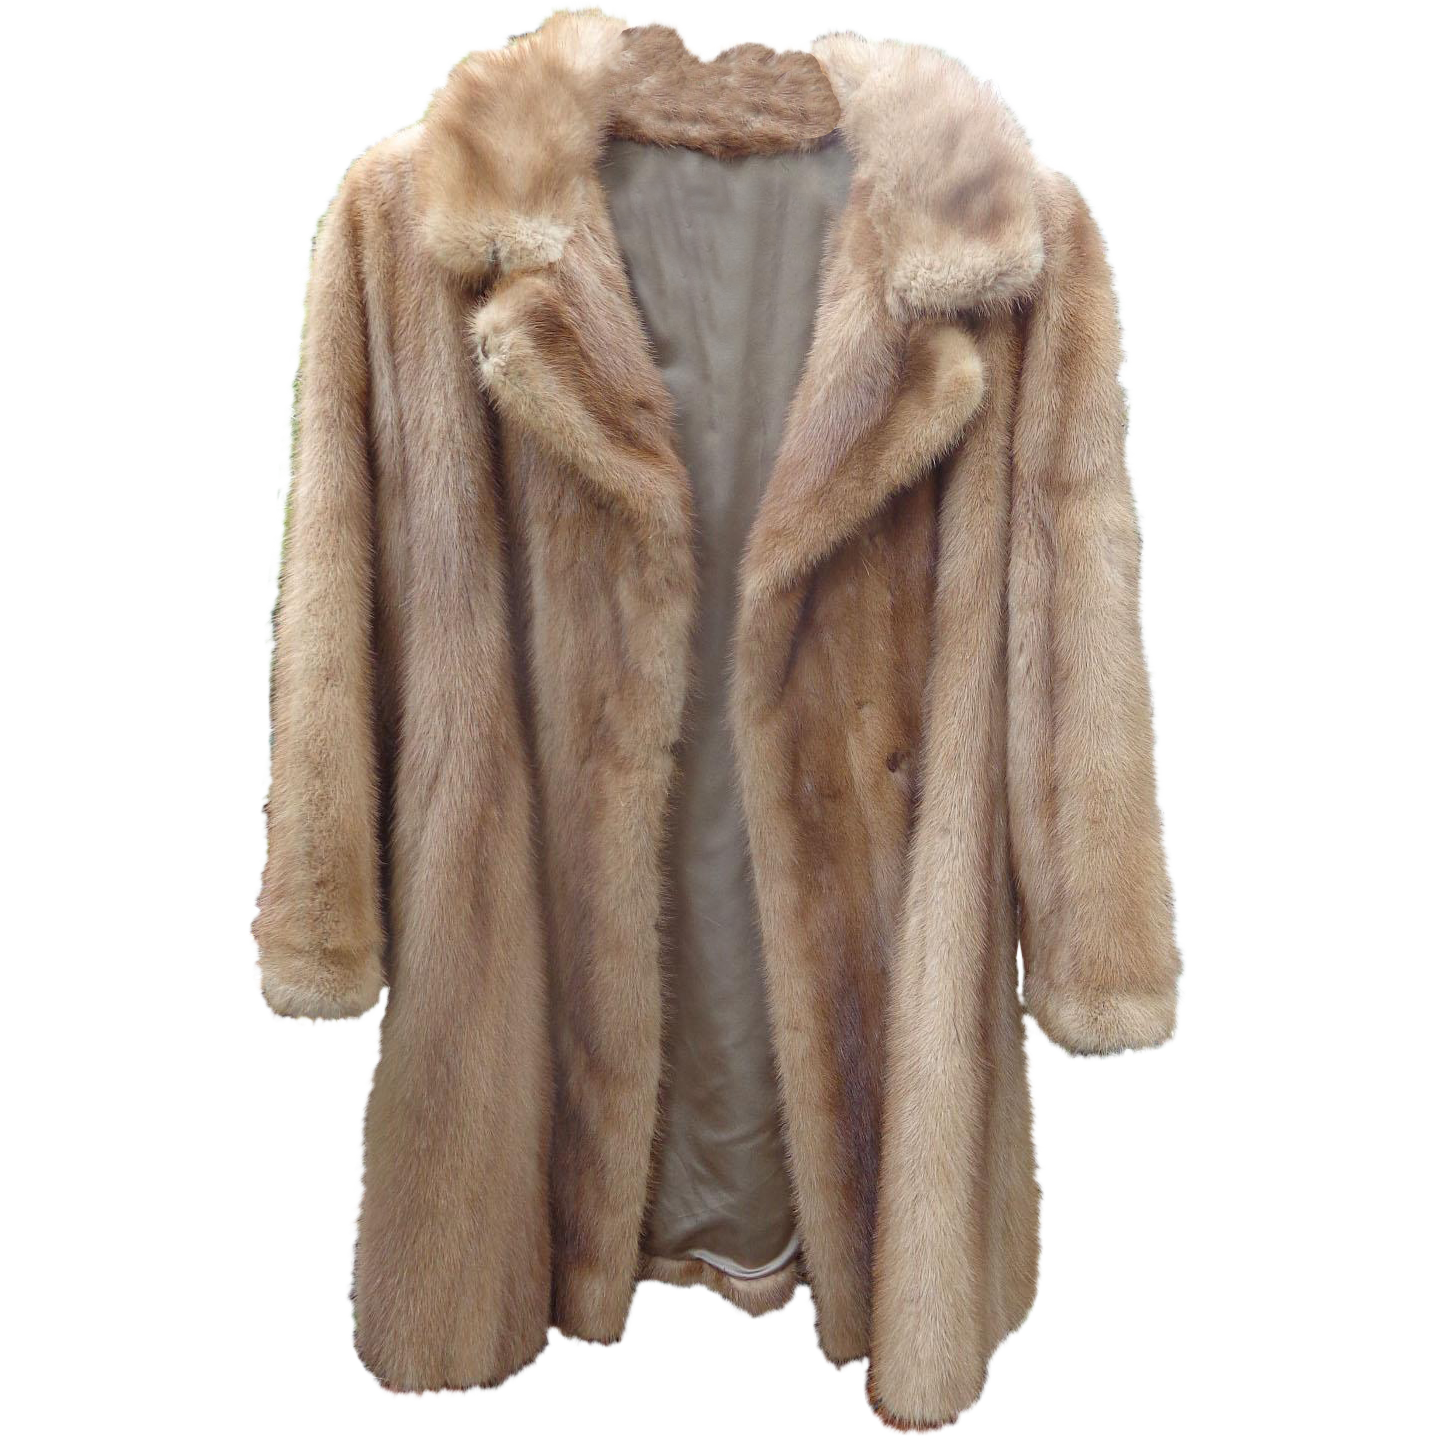 Faux Fur Coat PNG Image